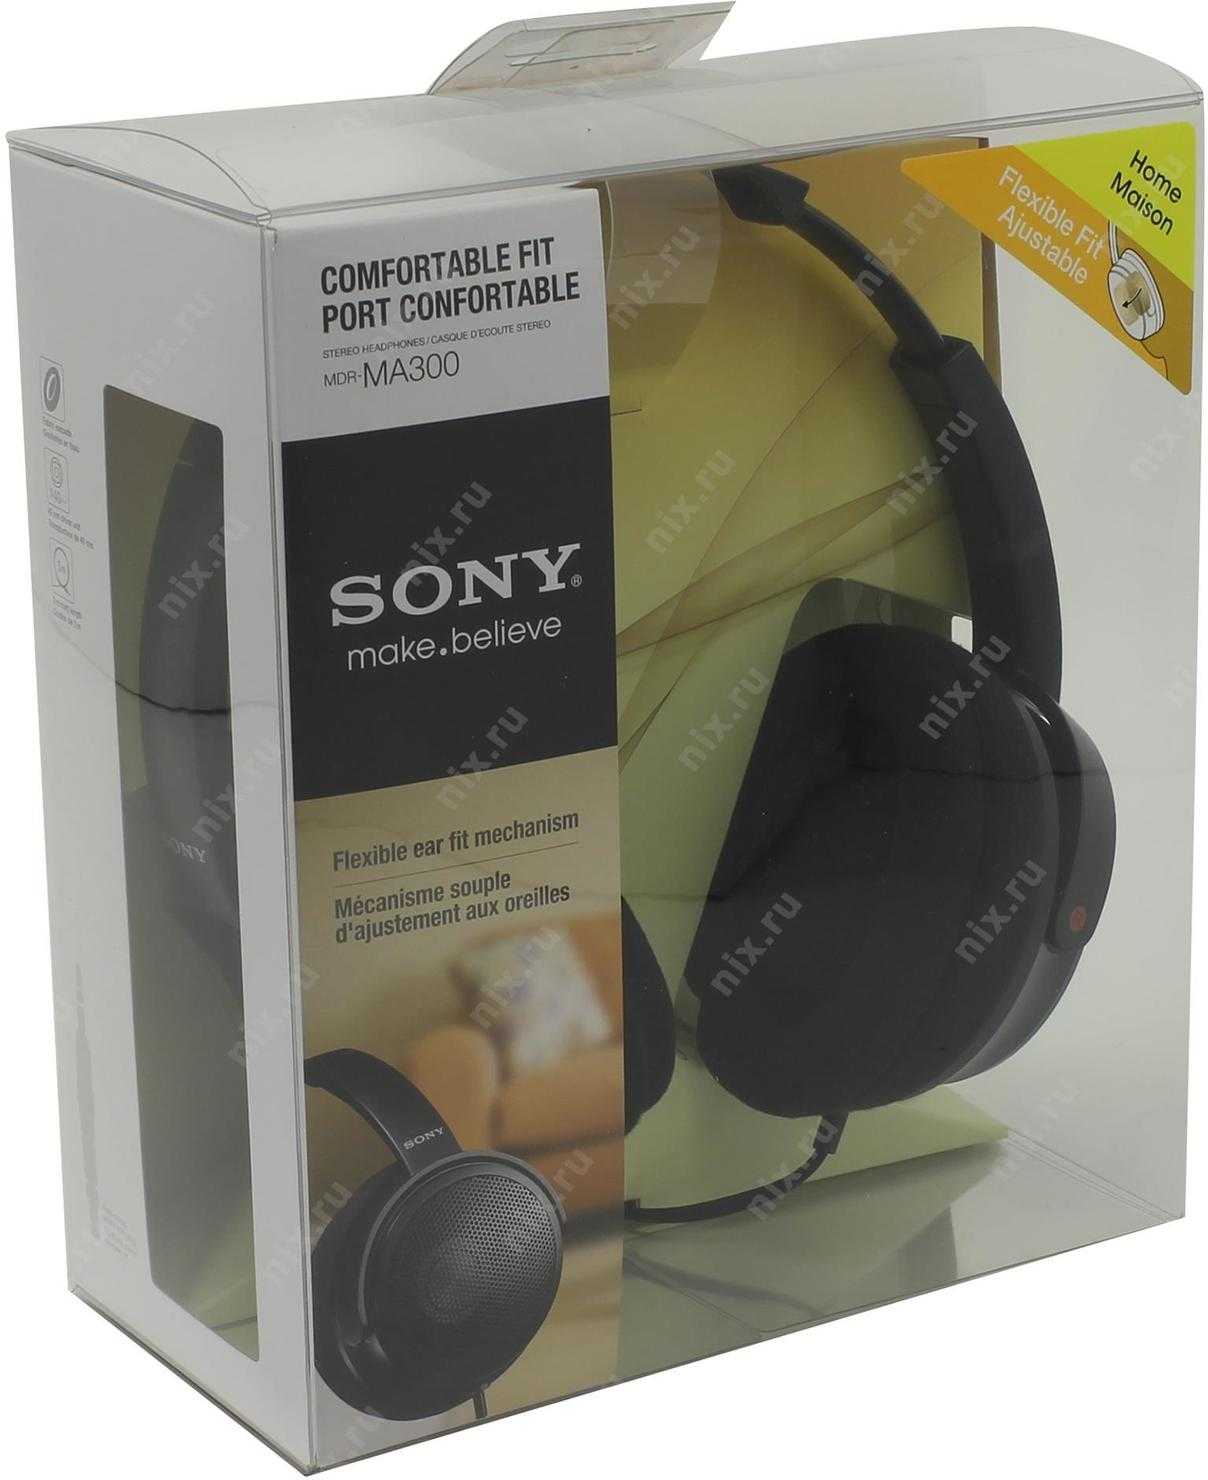 Sony mdr-ma100 купить - санкт-петербург по акционной цене , отзывы и обзоры.